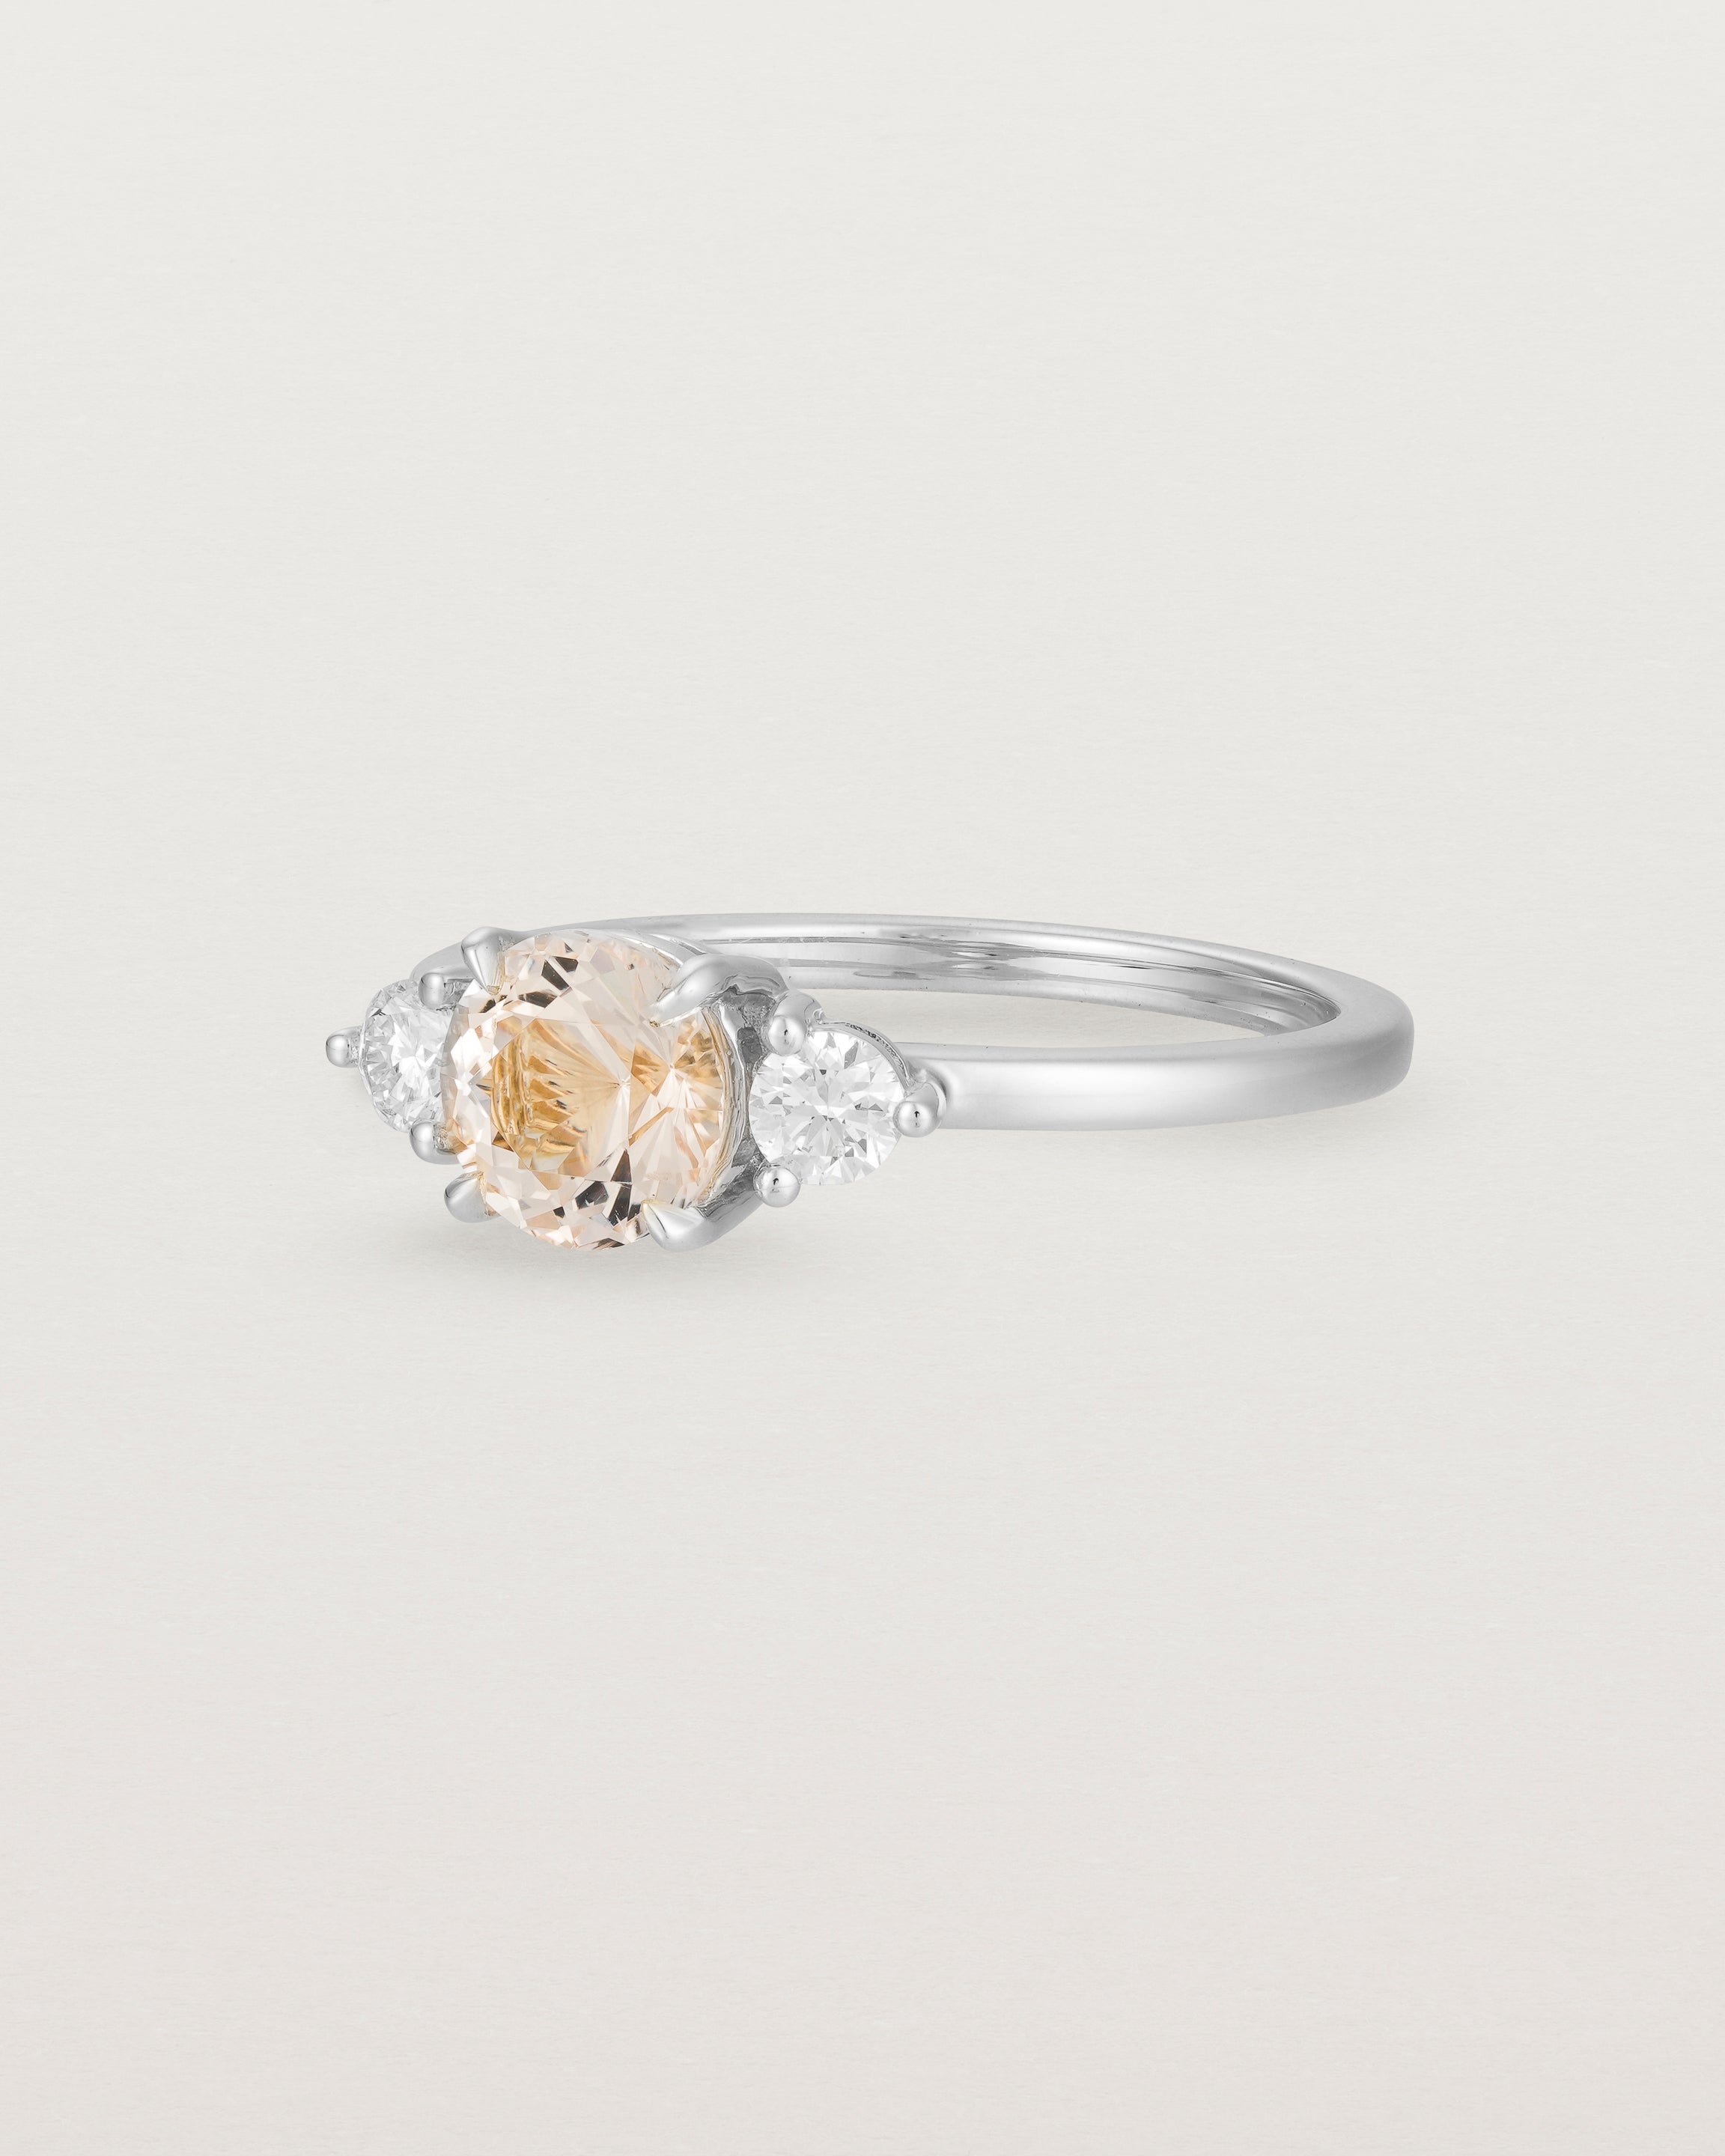 Angled view of the Petite Una Round Trio Ring | Morganite & Diamonds | White Gold.